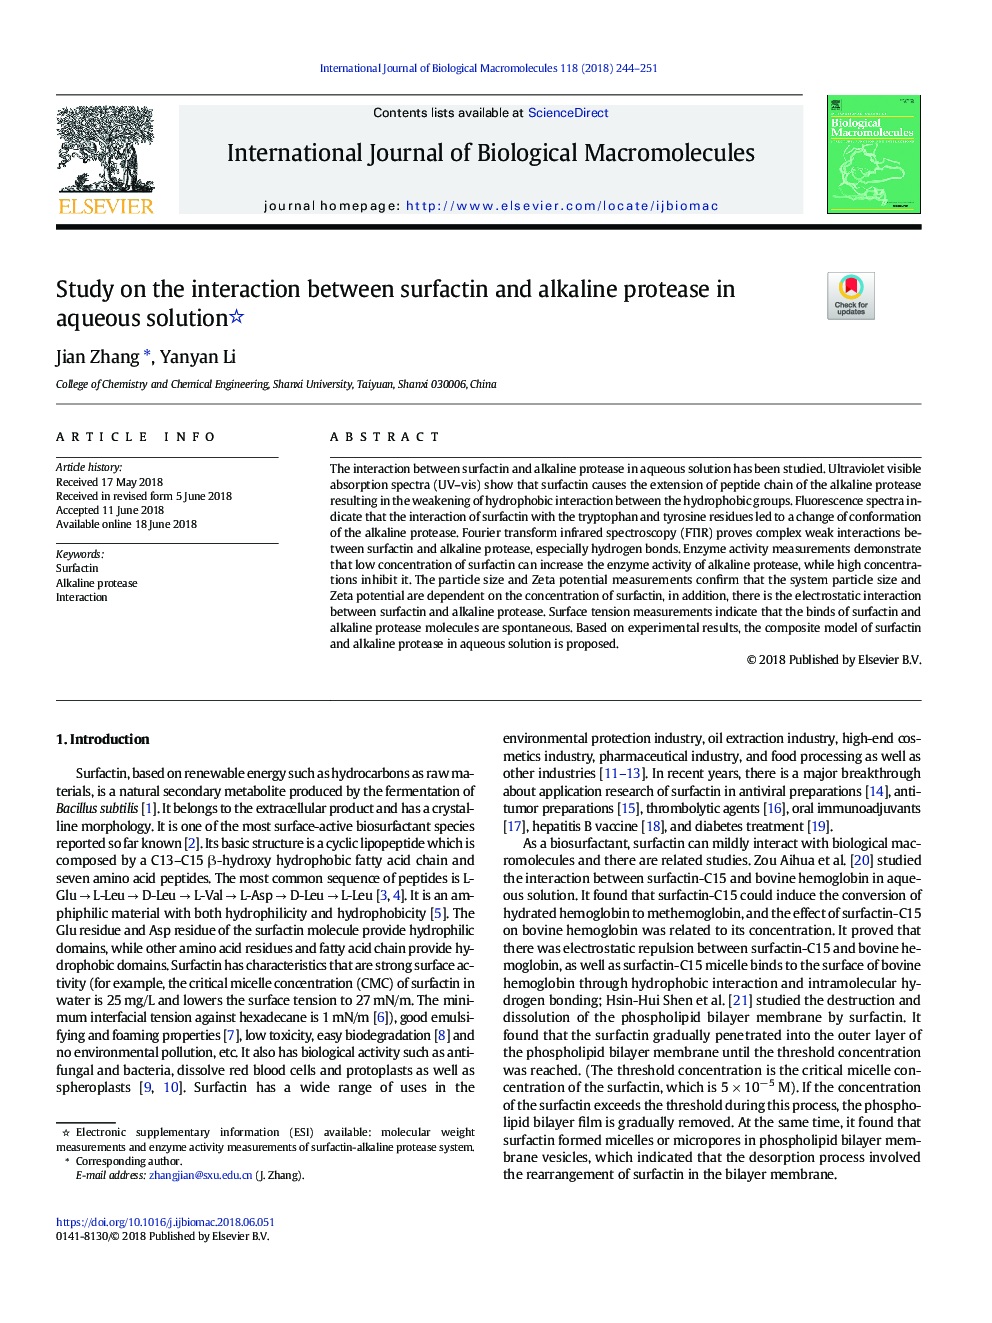 بررسی اثر متقابل سورفاکتین و پروتئاز قلیایی در محلول آبی 